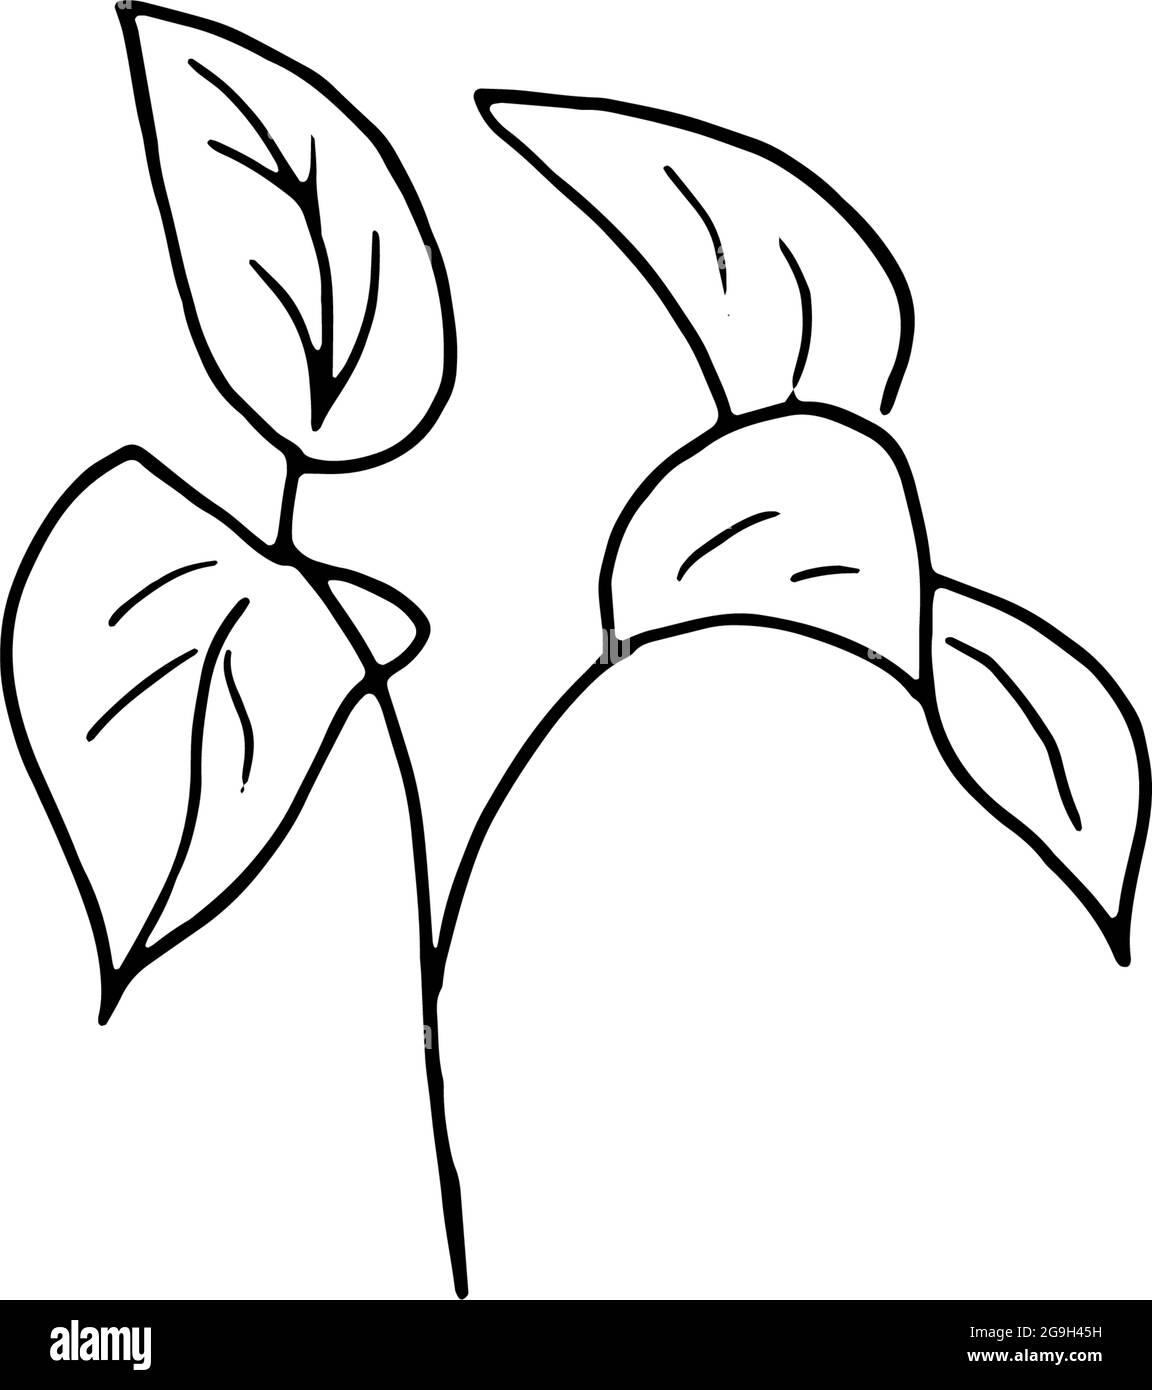 Fiori secchi, erba secca su sfondo bianco, illustrazione di incisione disegnata a mano, stile minimalista. Ikebana. Illustrazione Vettoriale